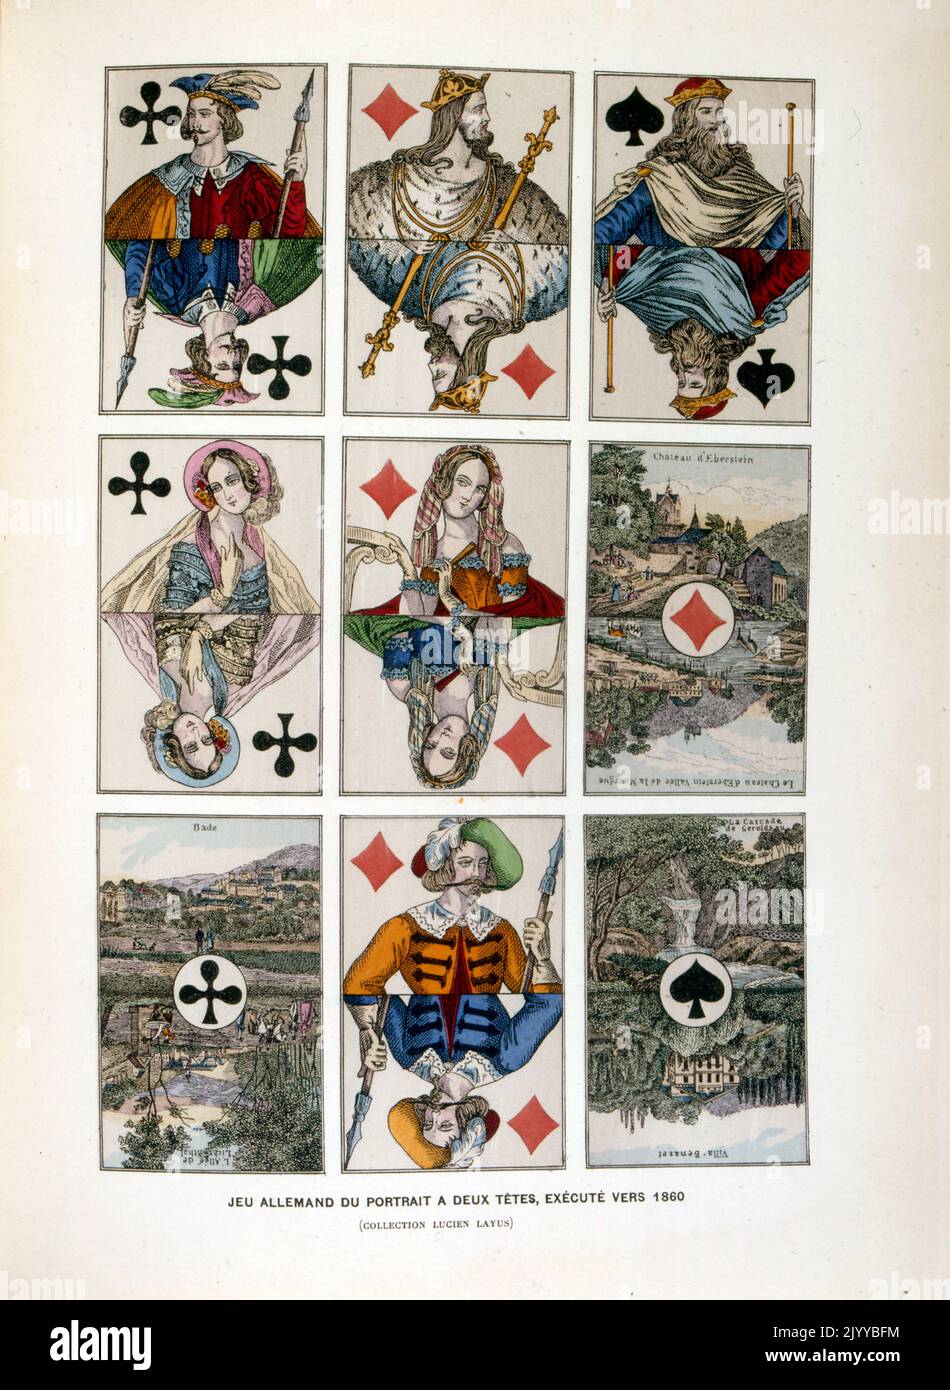 Farbige Abbildung von Spielkarten mit zwei Köpfen auf jeder Karte in gespiegelter Weise, um 1860 gemacht. Stockfoto